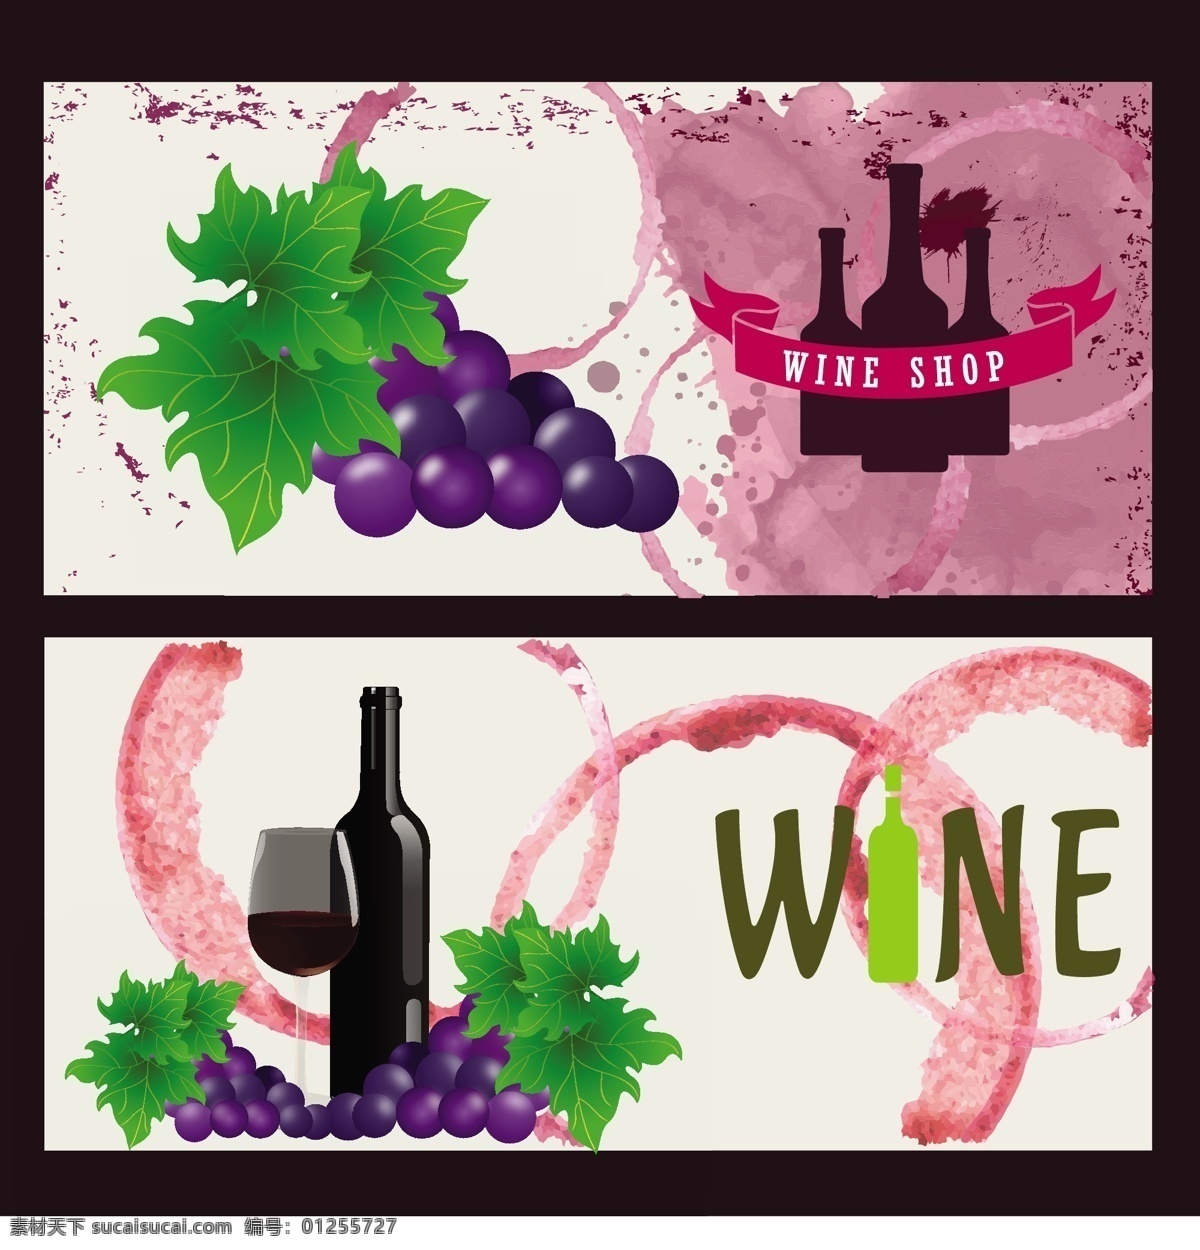 葡萄酒 广告 背景 酒 酒瓶 葡萄 广告背景 矢量背景 红酒